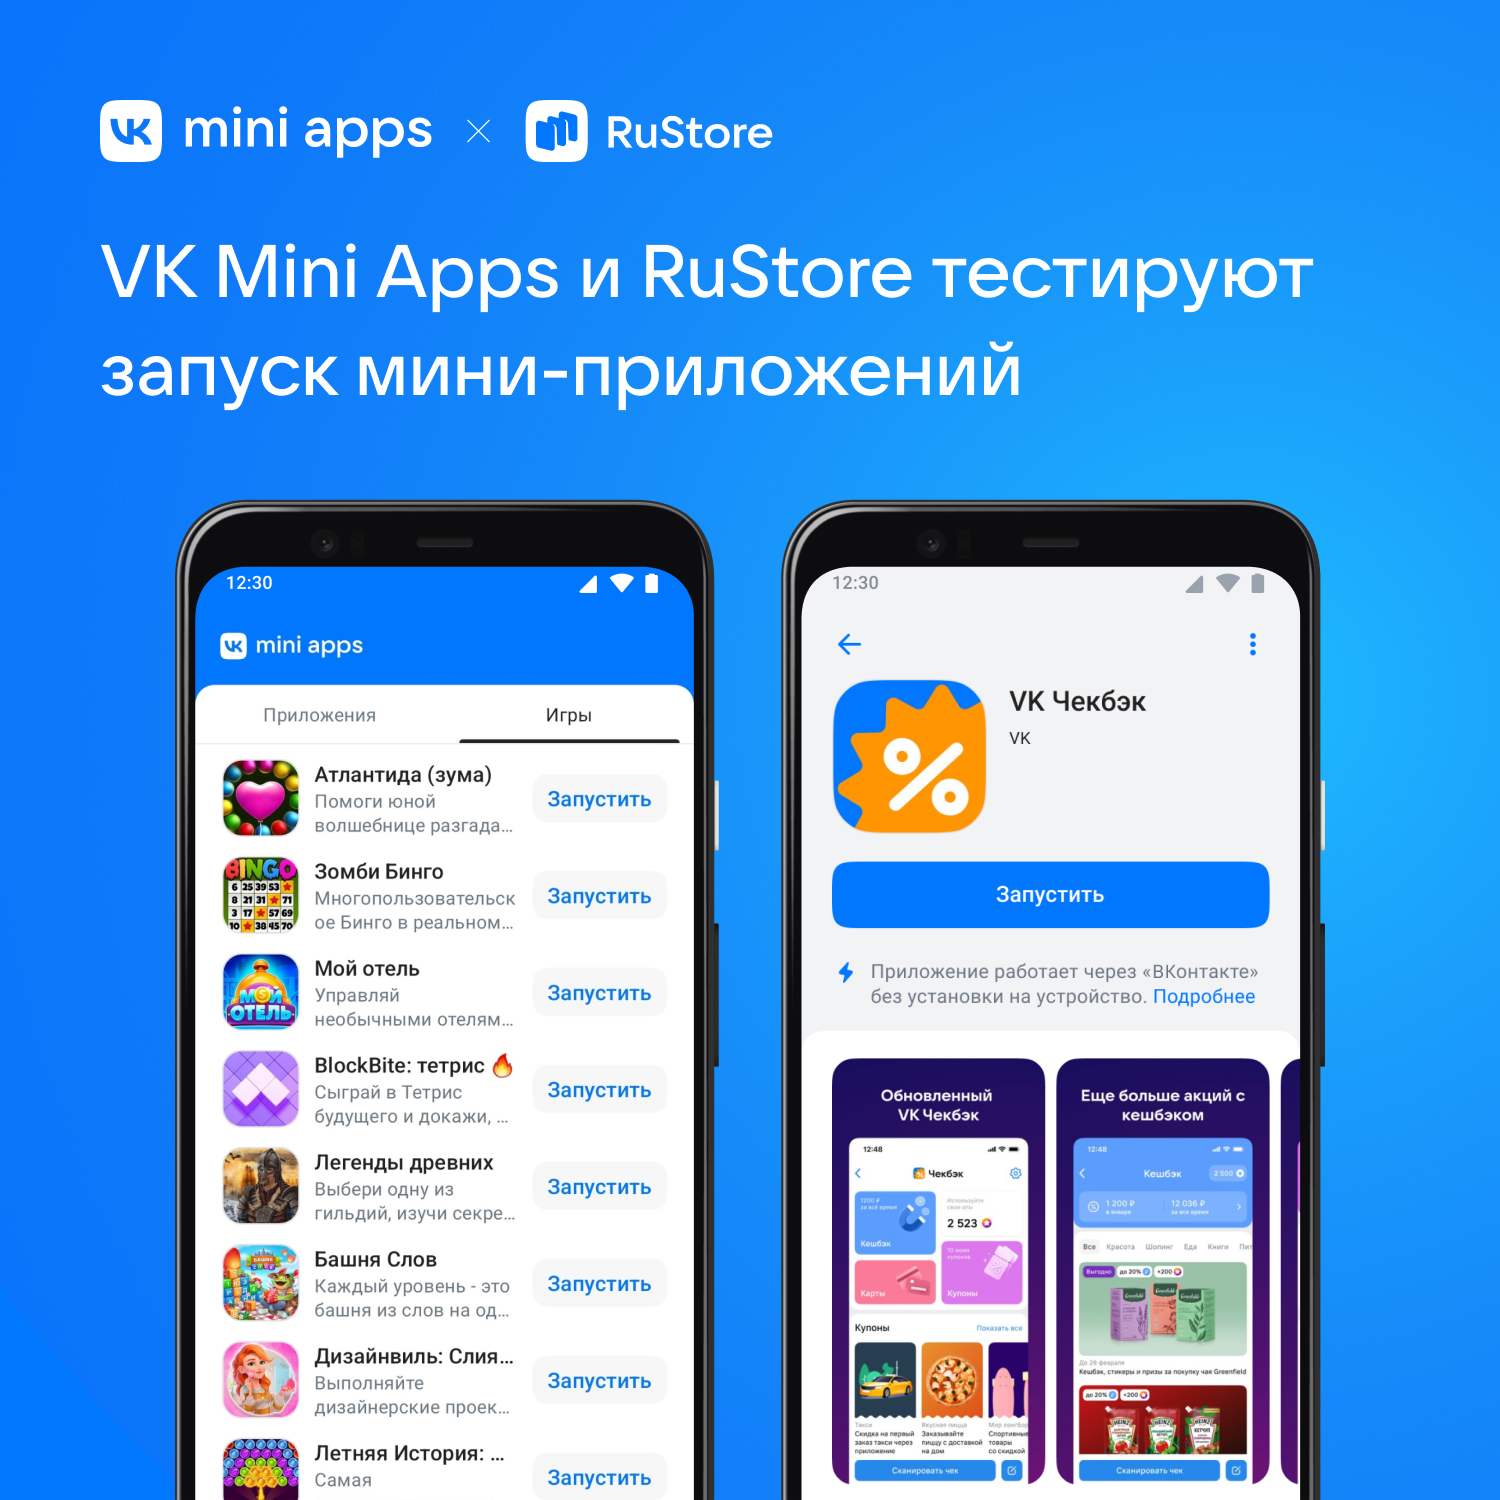 Разработчики сервисов VK Mini Apps смогут публиковаться в RuStore